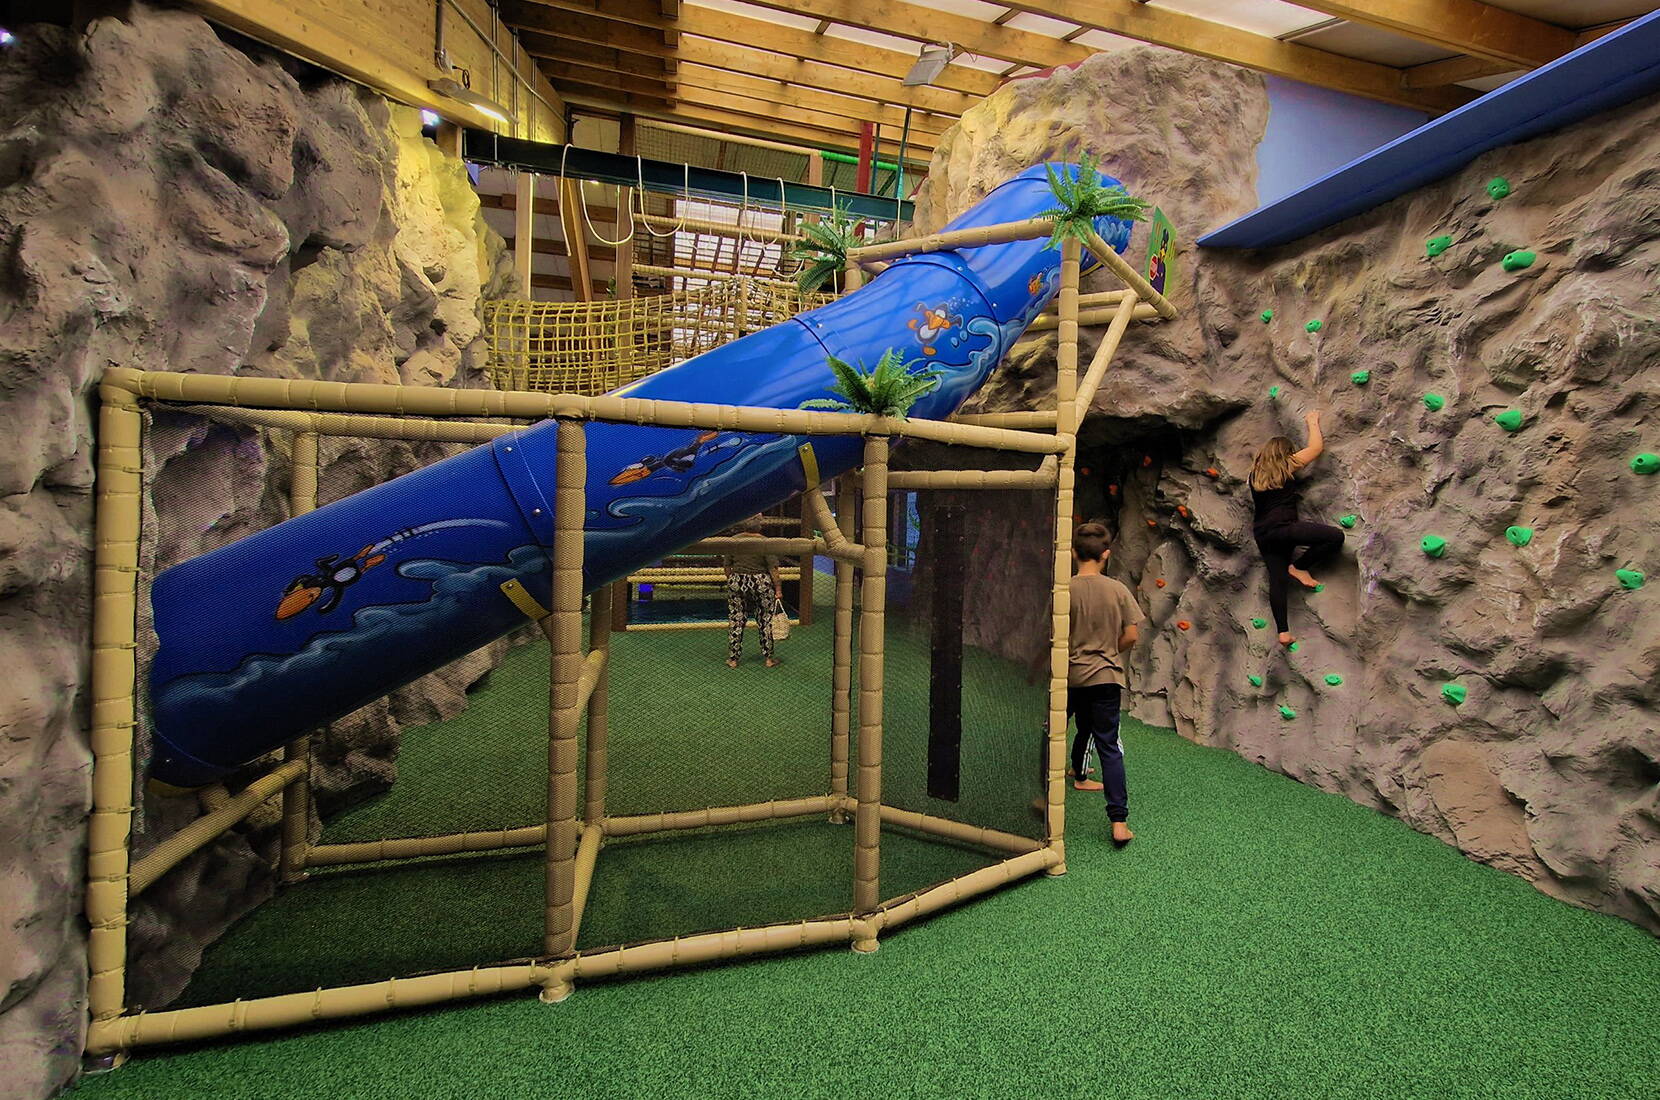 Il BEO Funpark offre divertimento e azione per tutte le età. Tutte le attrezzature del parco giochi possono essere utilizzate anche dai bambini più grandi e dagli adulti che li accompagnano. Scaricate subito il buono sconto ed esplorate il vulcano da arrampicata, lo scivolo gigante, i vari castelli gonfiabili e molto altro ancora.